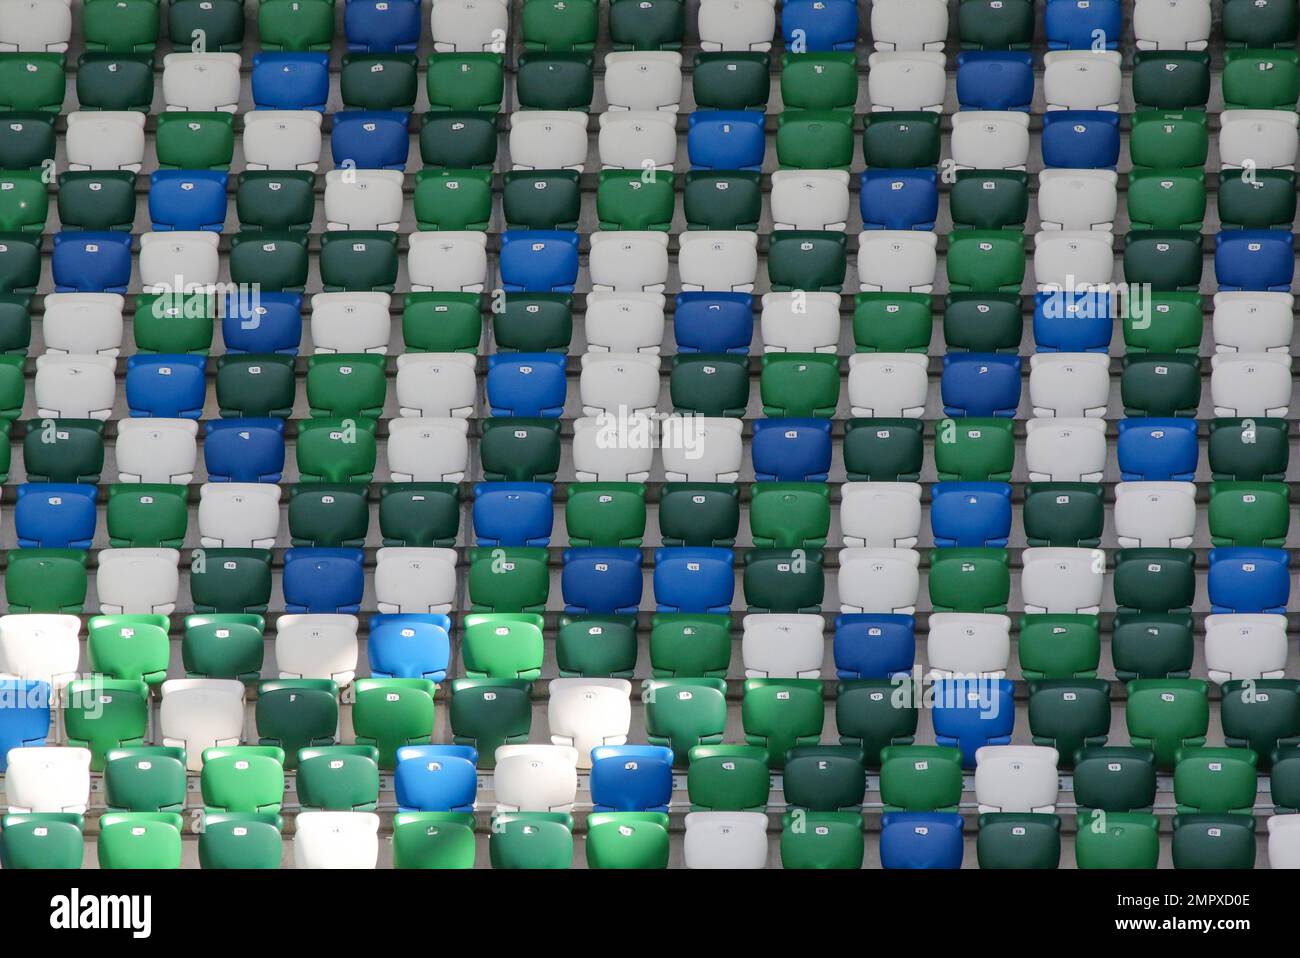 Grün-blau-weiße Sitze im Stadion. Reihen moderner Fußballstadion-Klappsitze Windsor Park, Belfast. Stockfoto